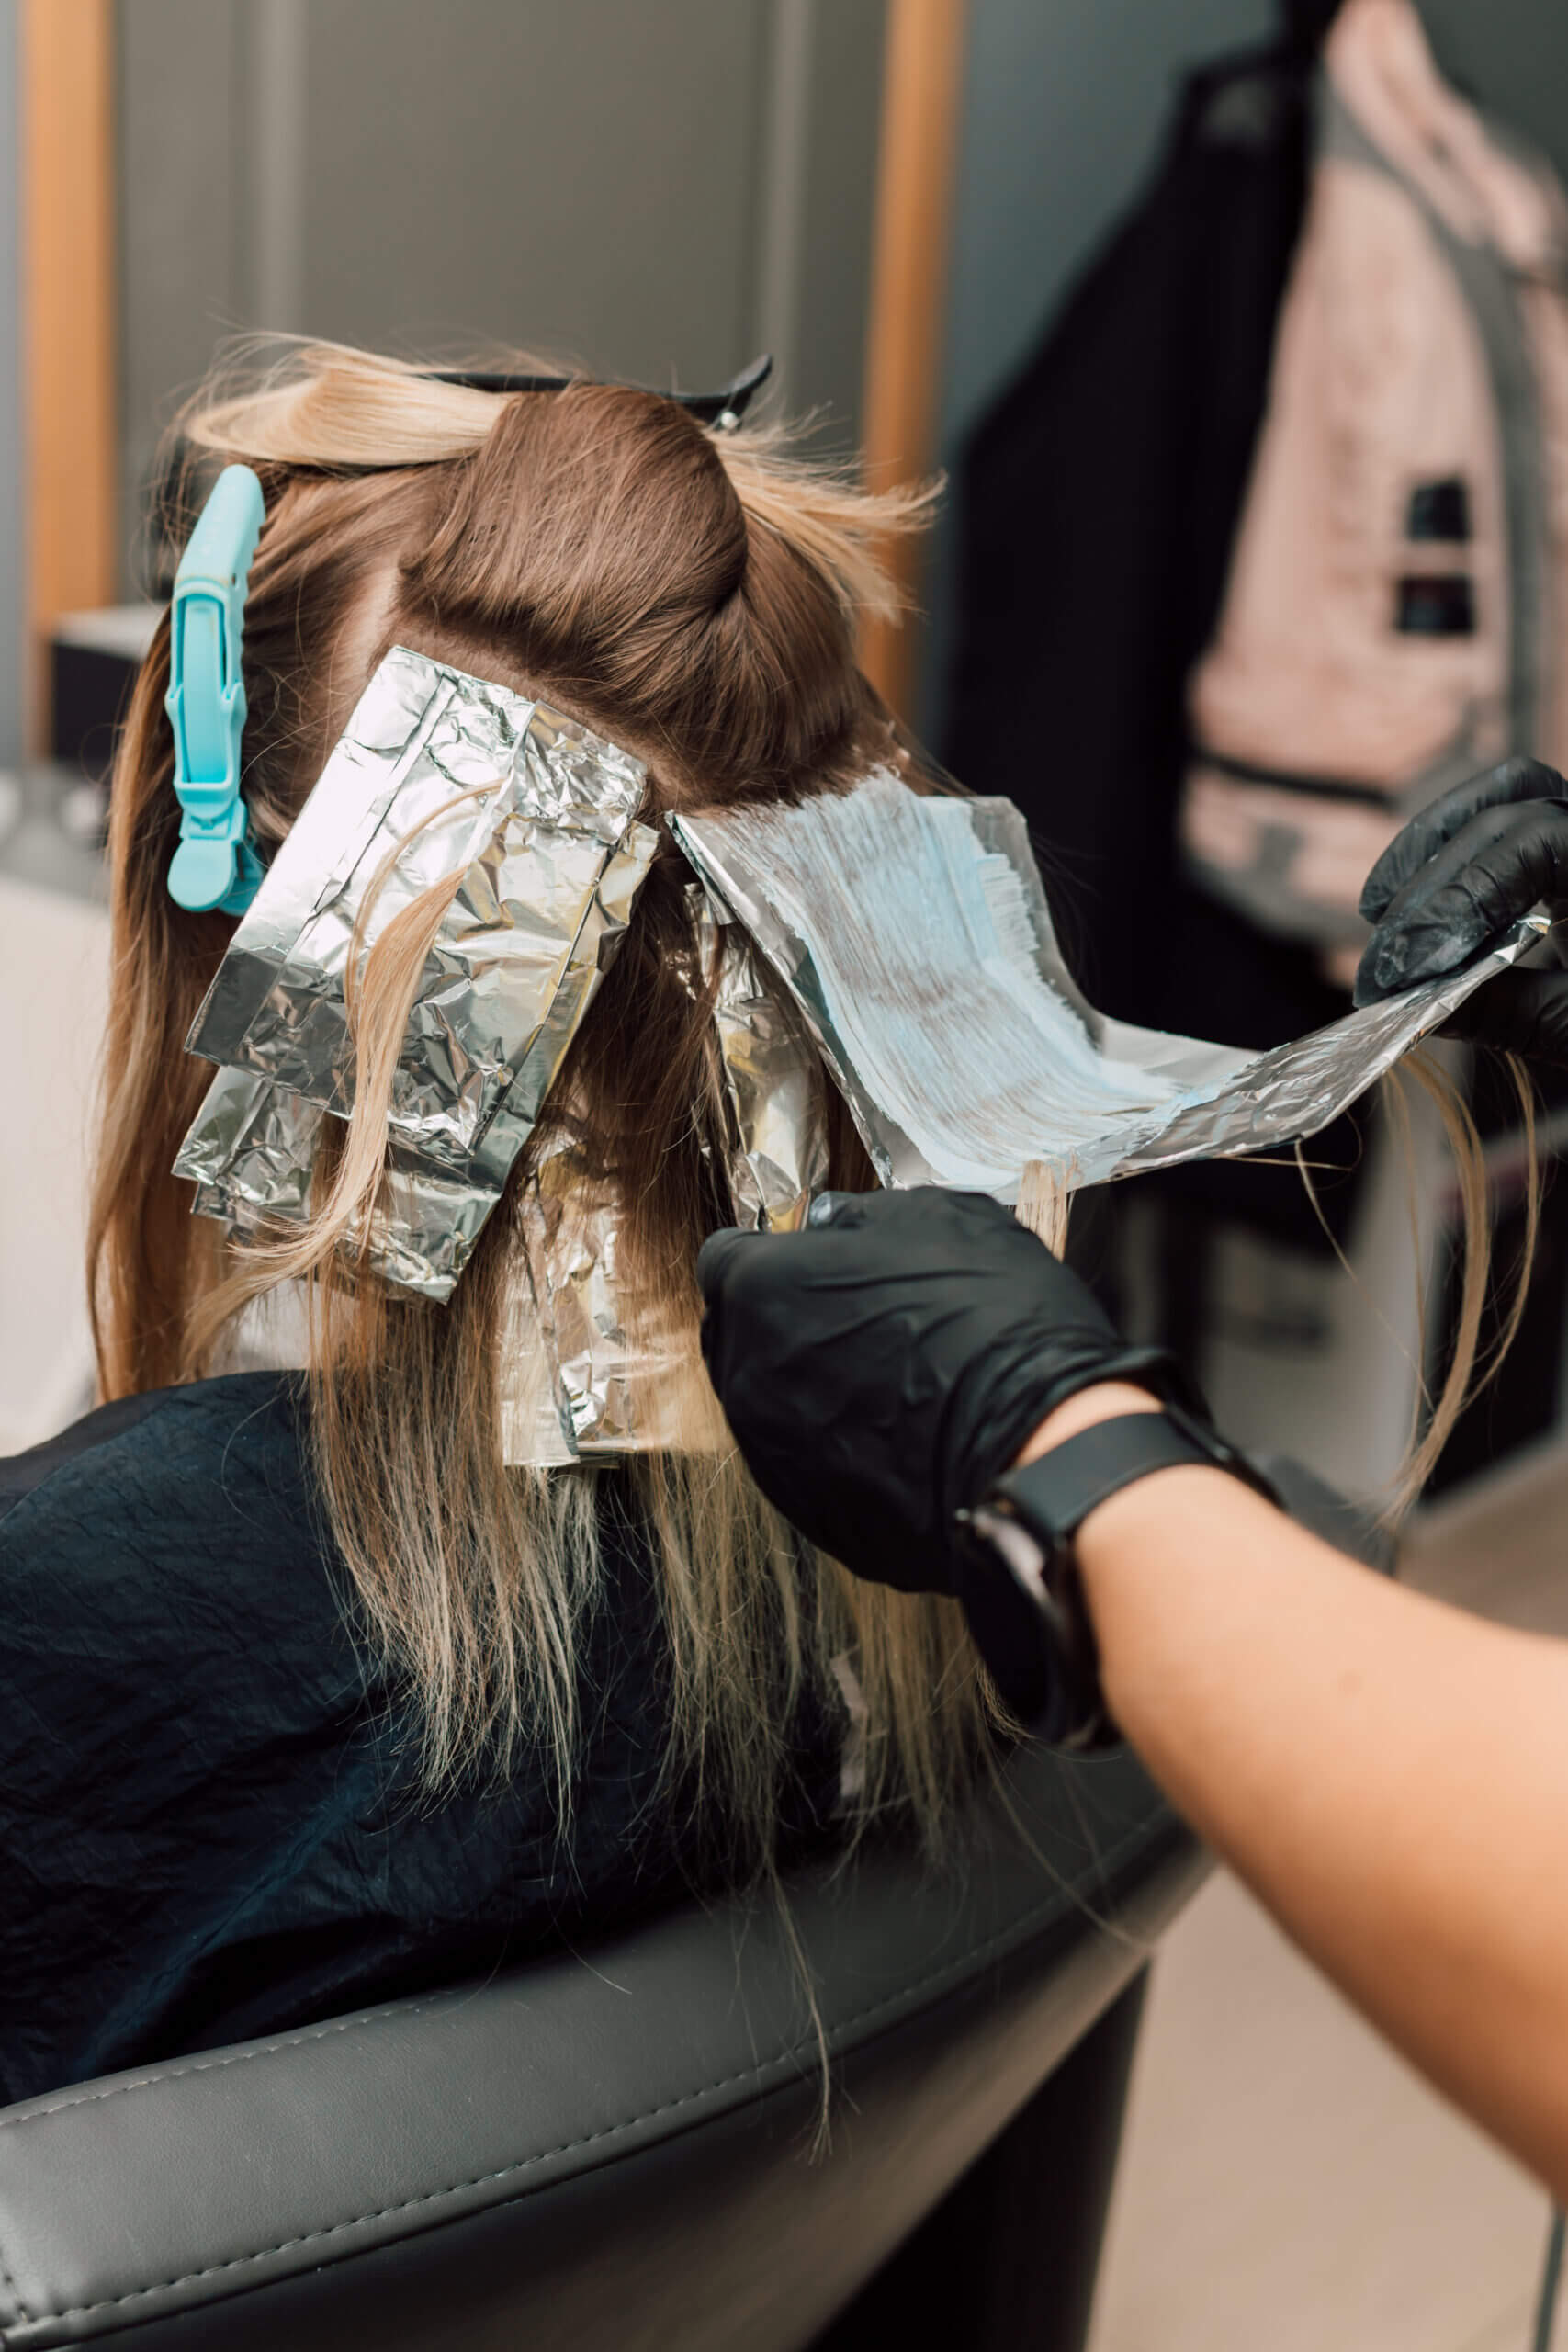 אישה לומדת לעשות פסים בשיער בצבע בלונד